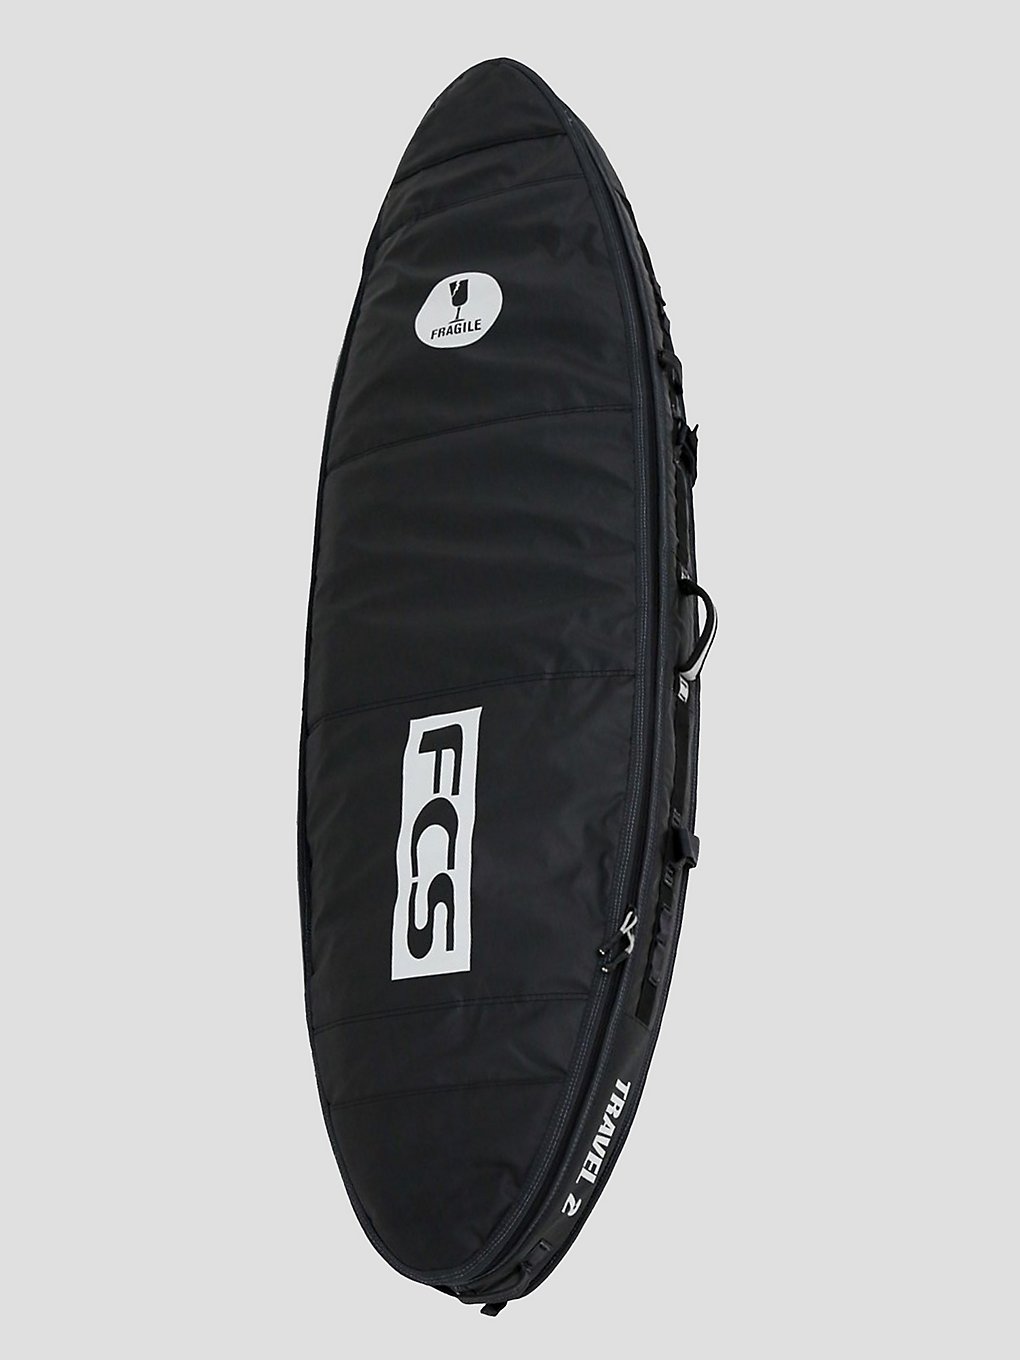 FCS Travel 2 Fun 7'0 Surfboard-Tasche grey kaufen